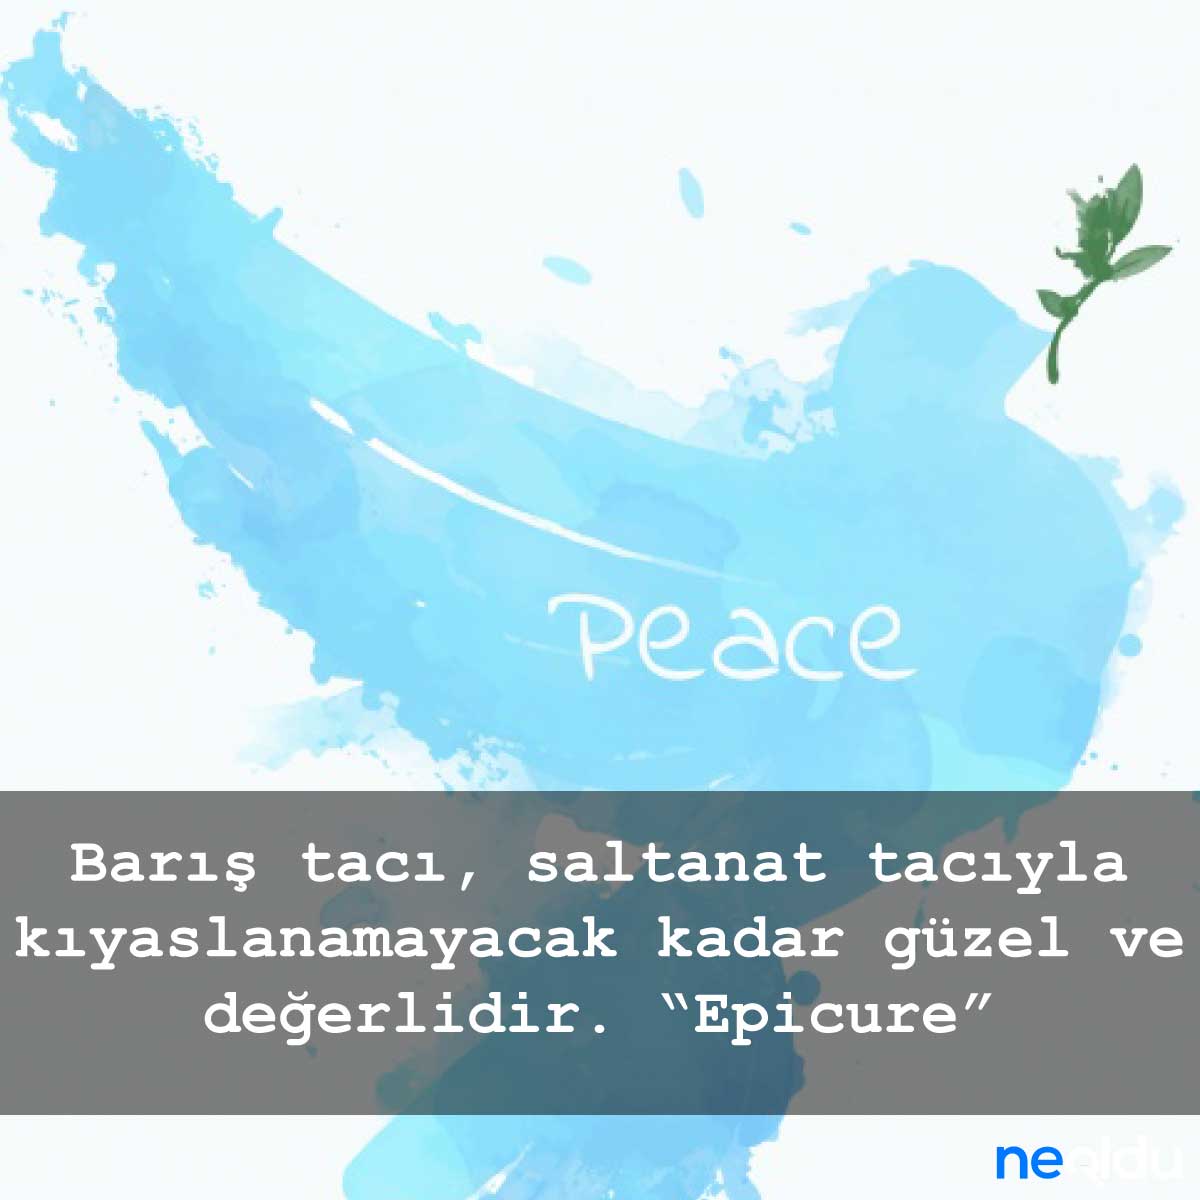 Barış ile ilgili sözler